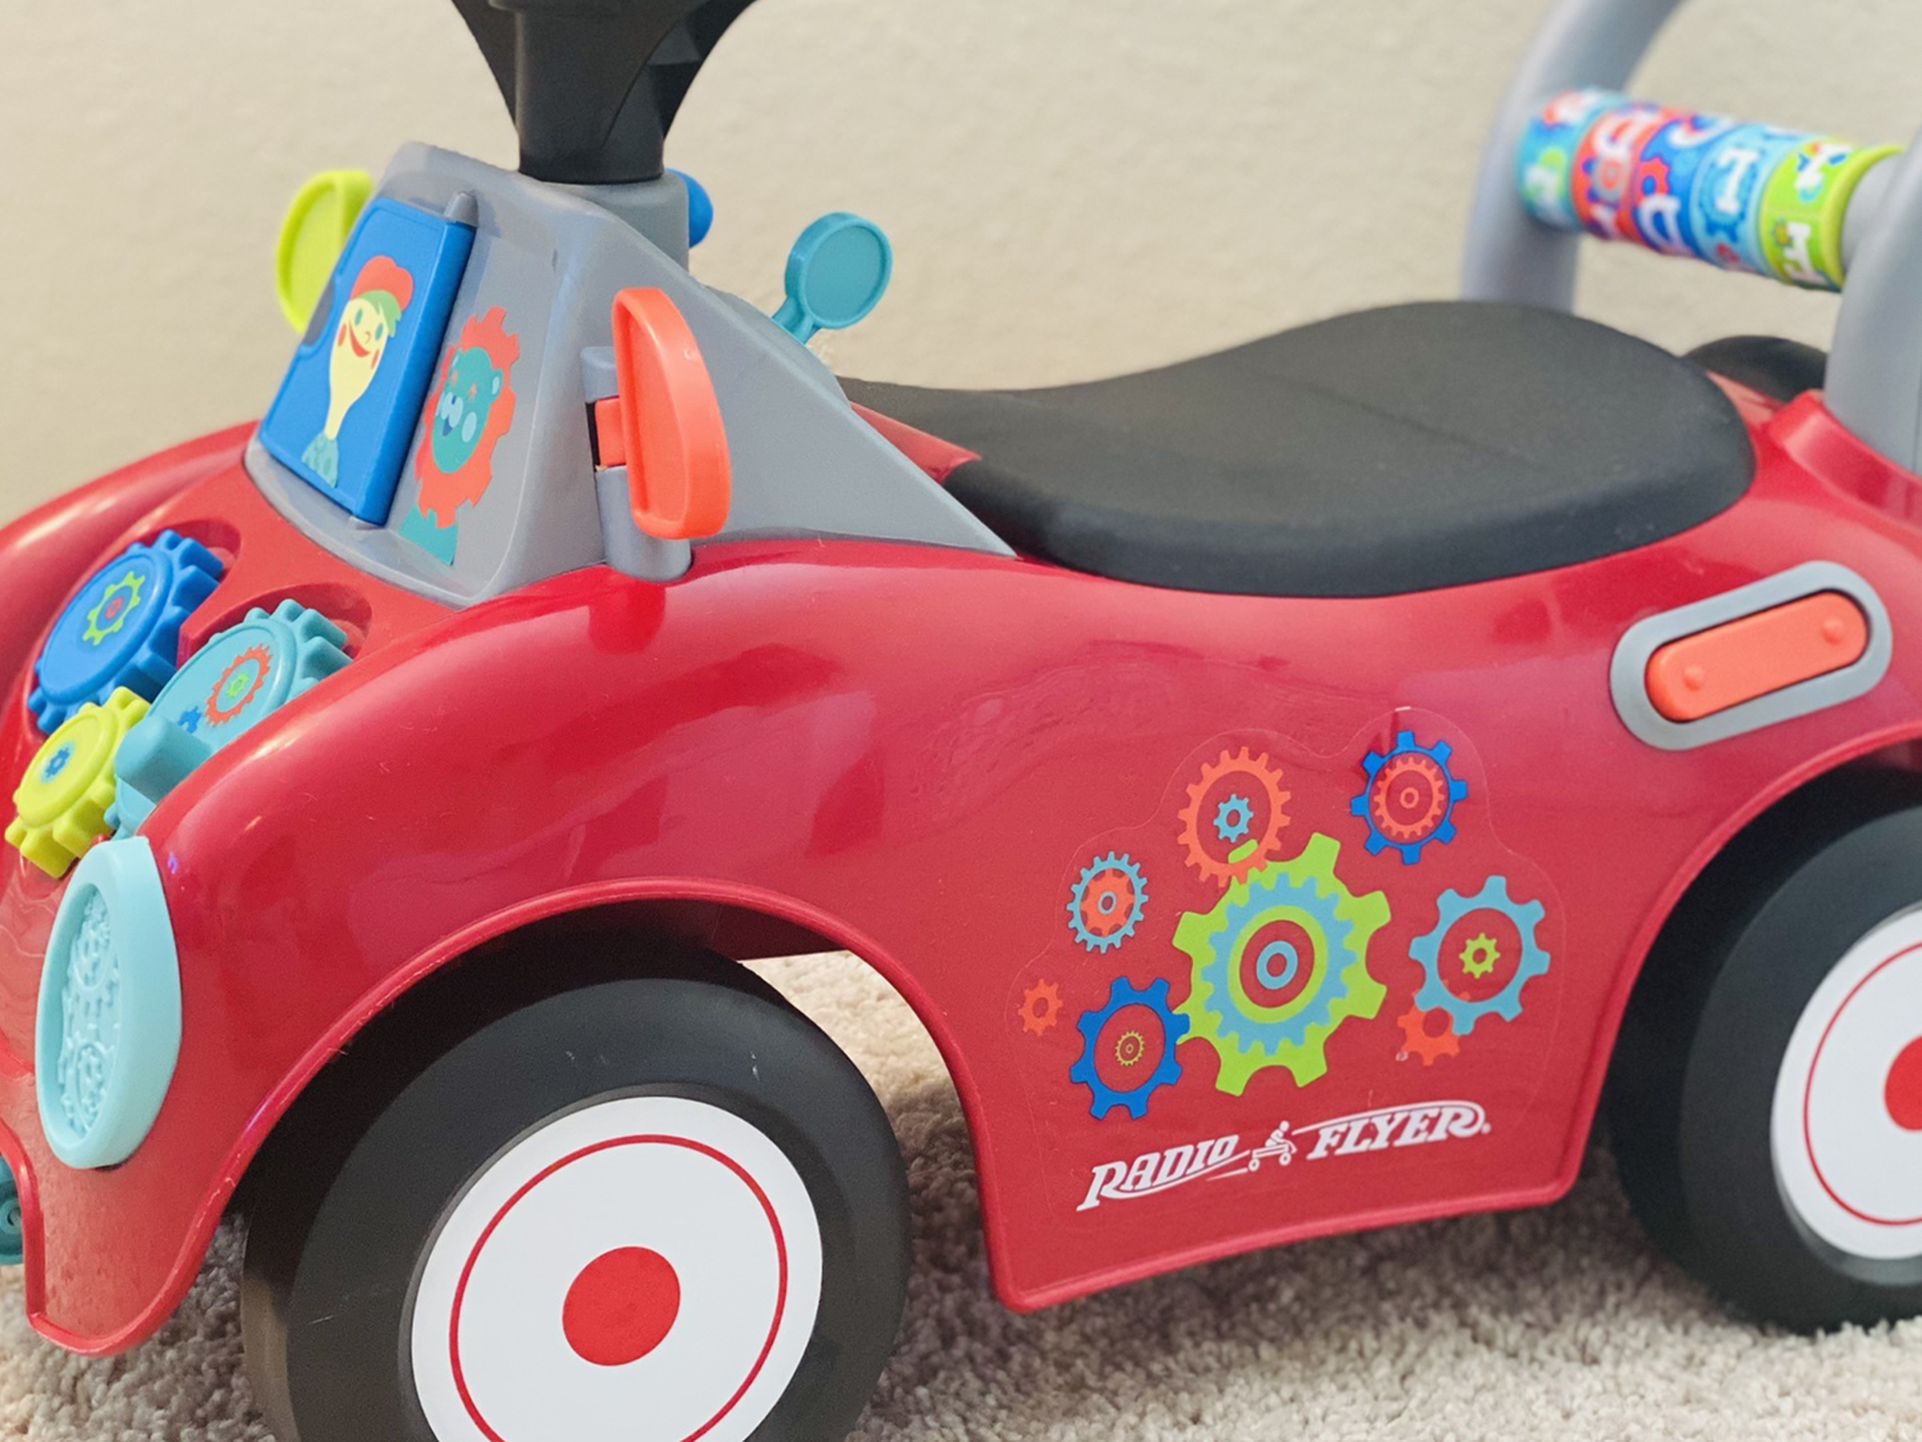 Radio Flyer Toy Car